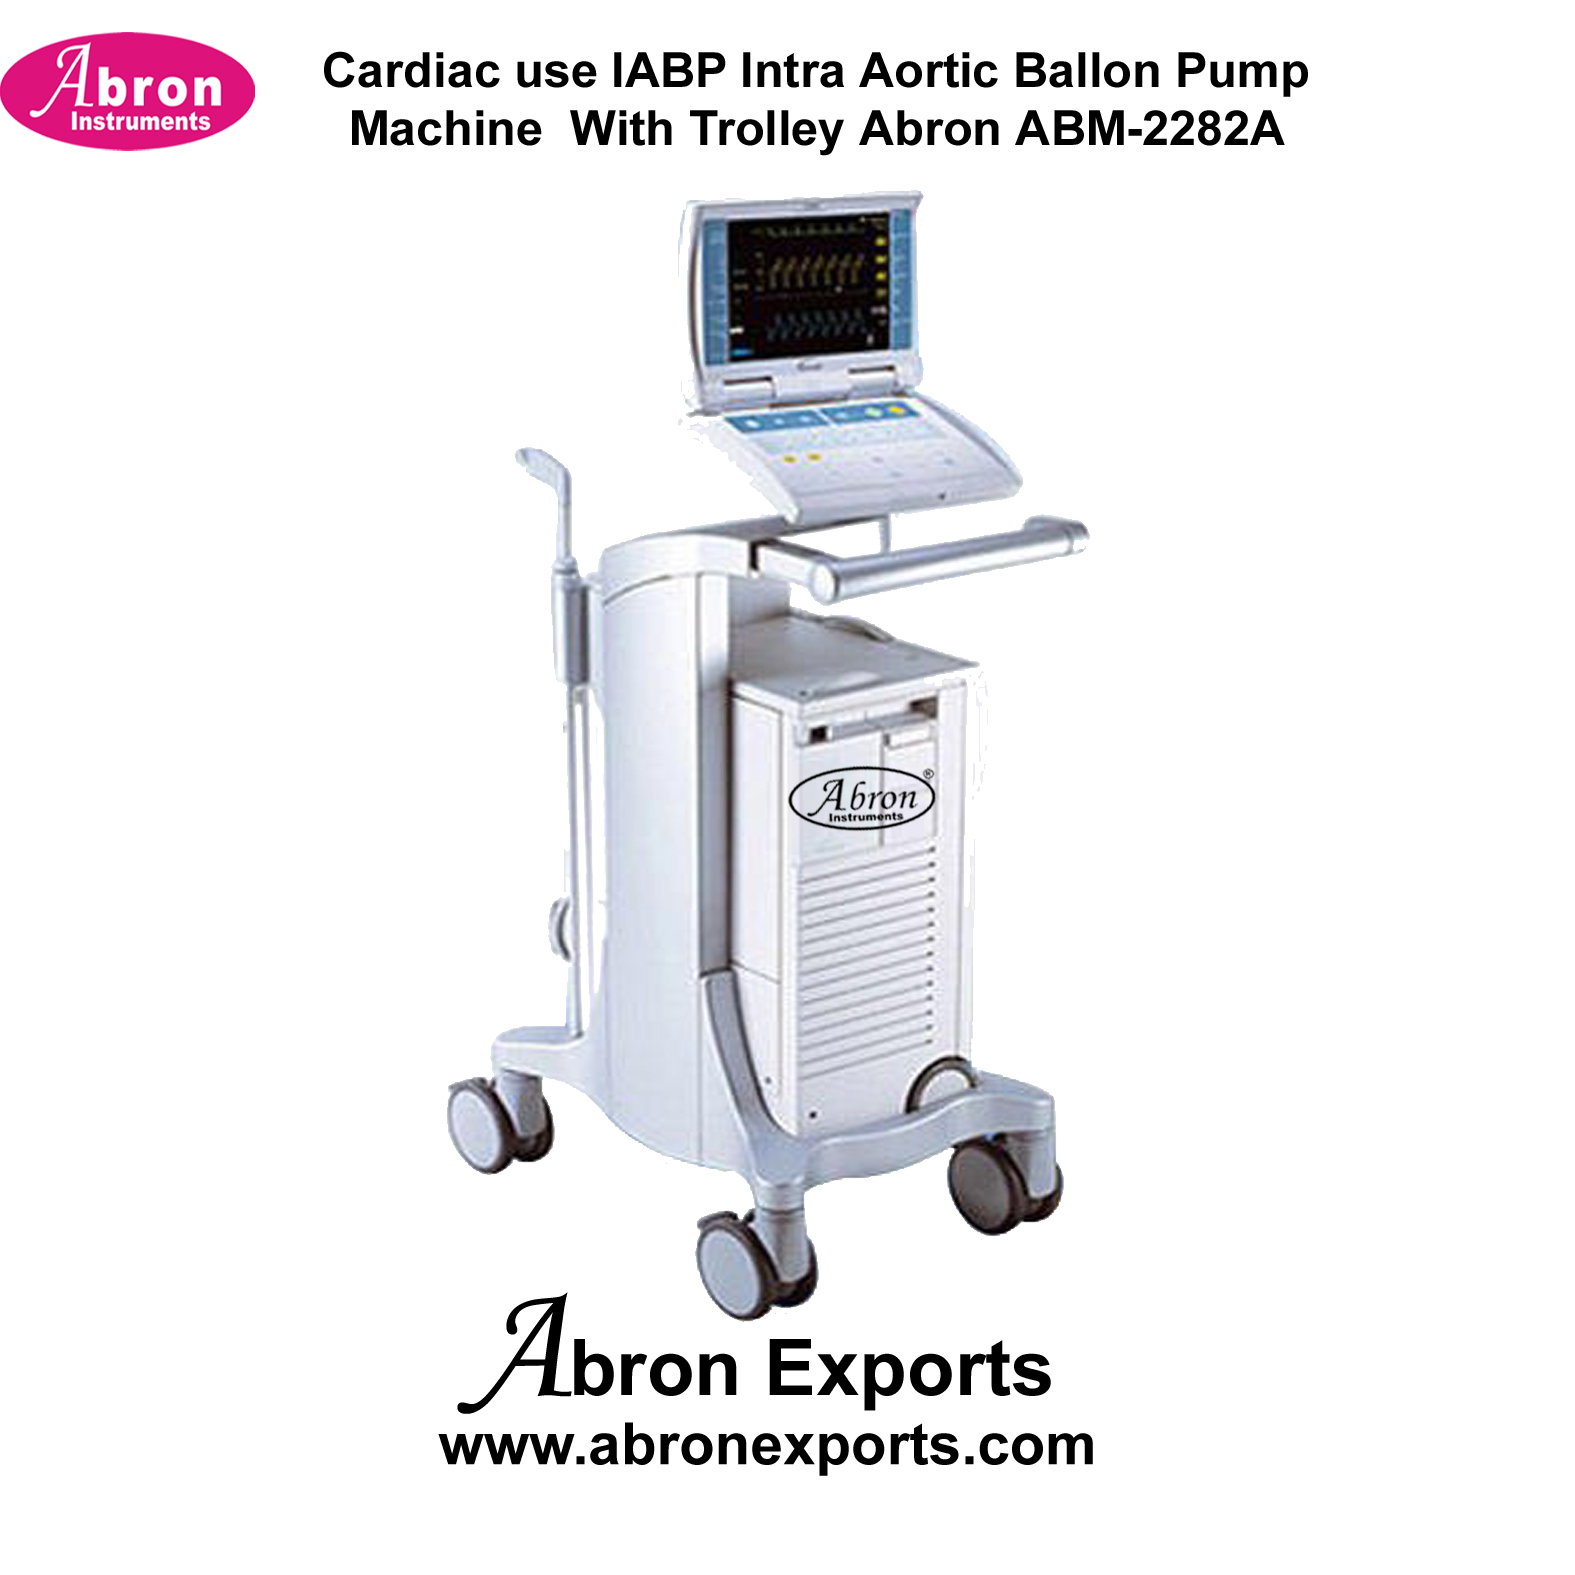 Cardiac use IABP Intra Aortic Balloon Pump Machine With Trolley Abron ABM-2282A 